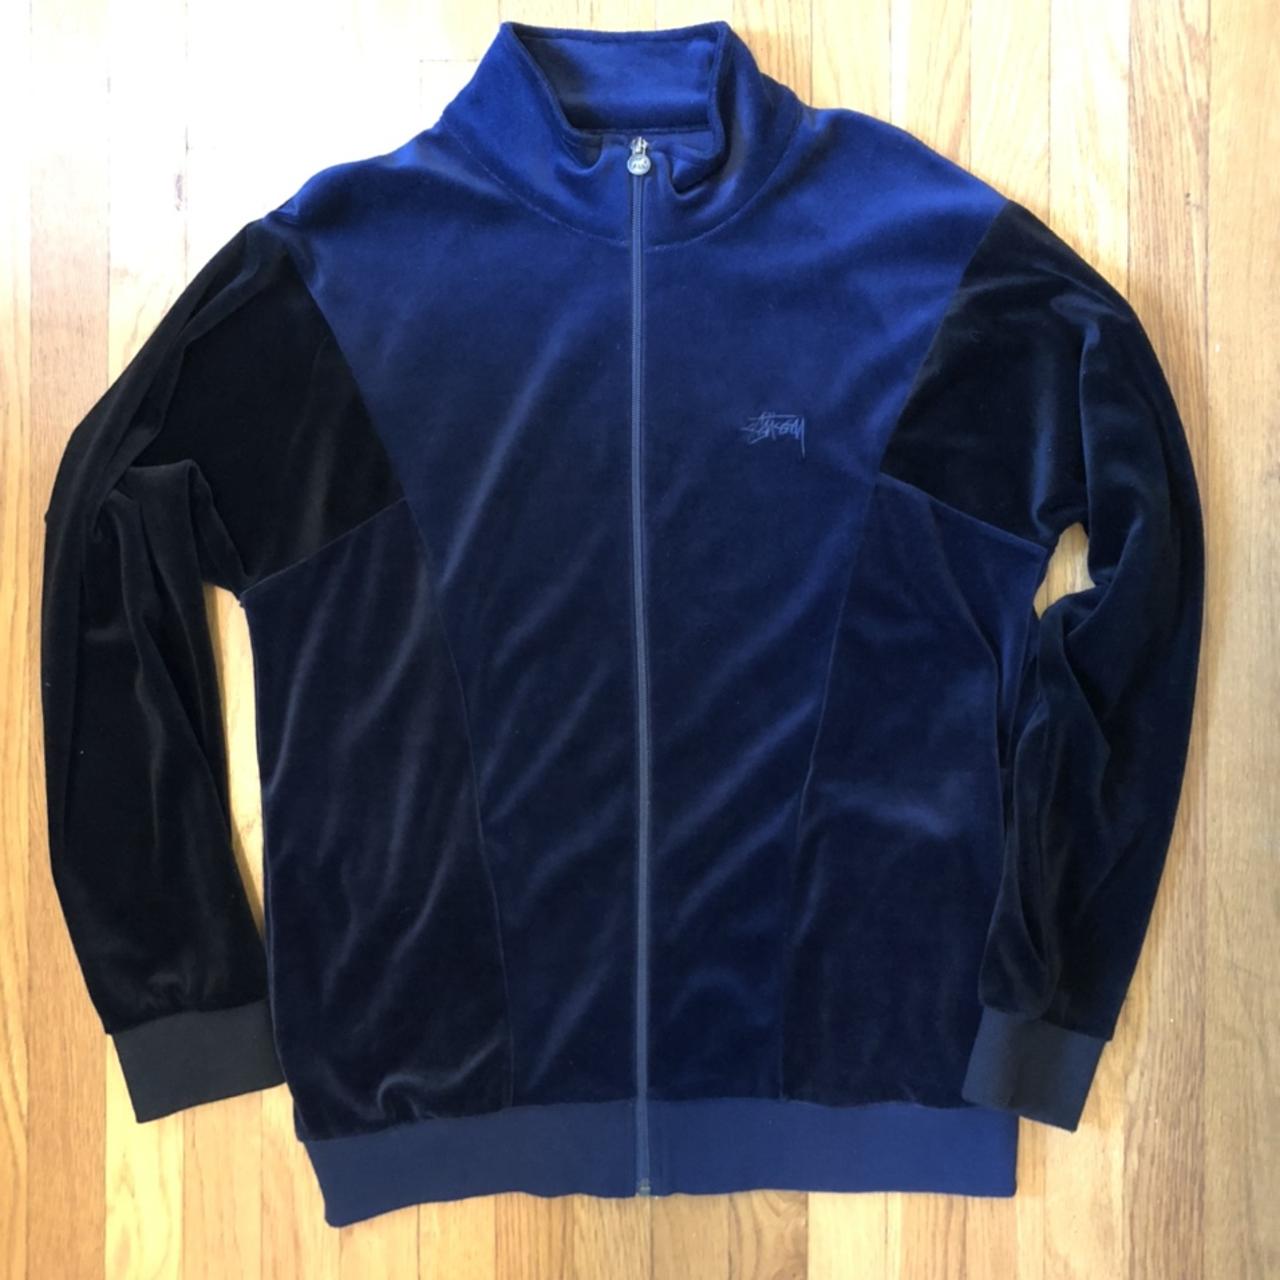 Stussy velour track jacket Size: Medium Color:... - Depop